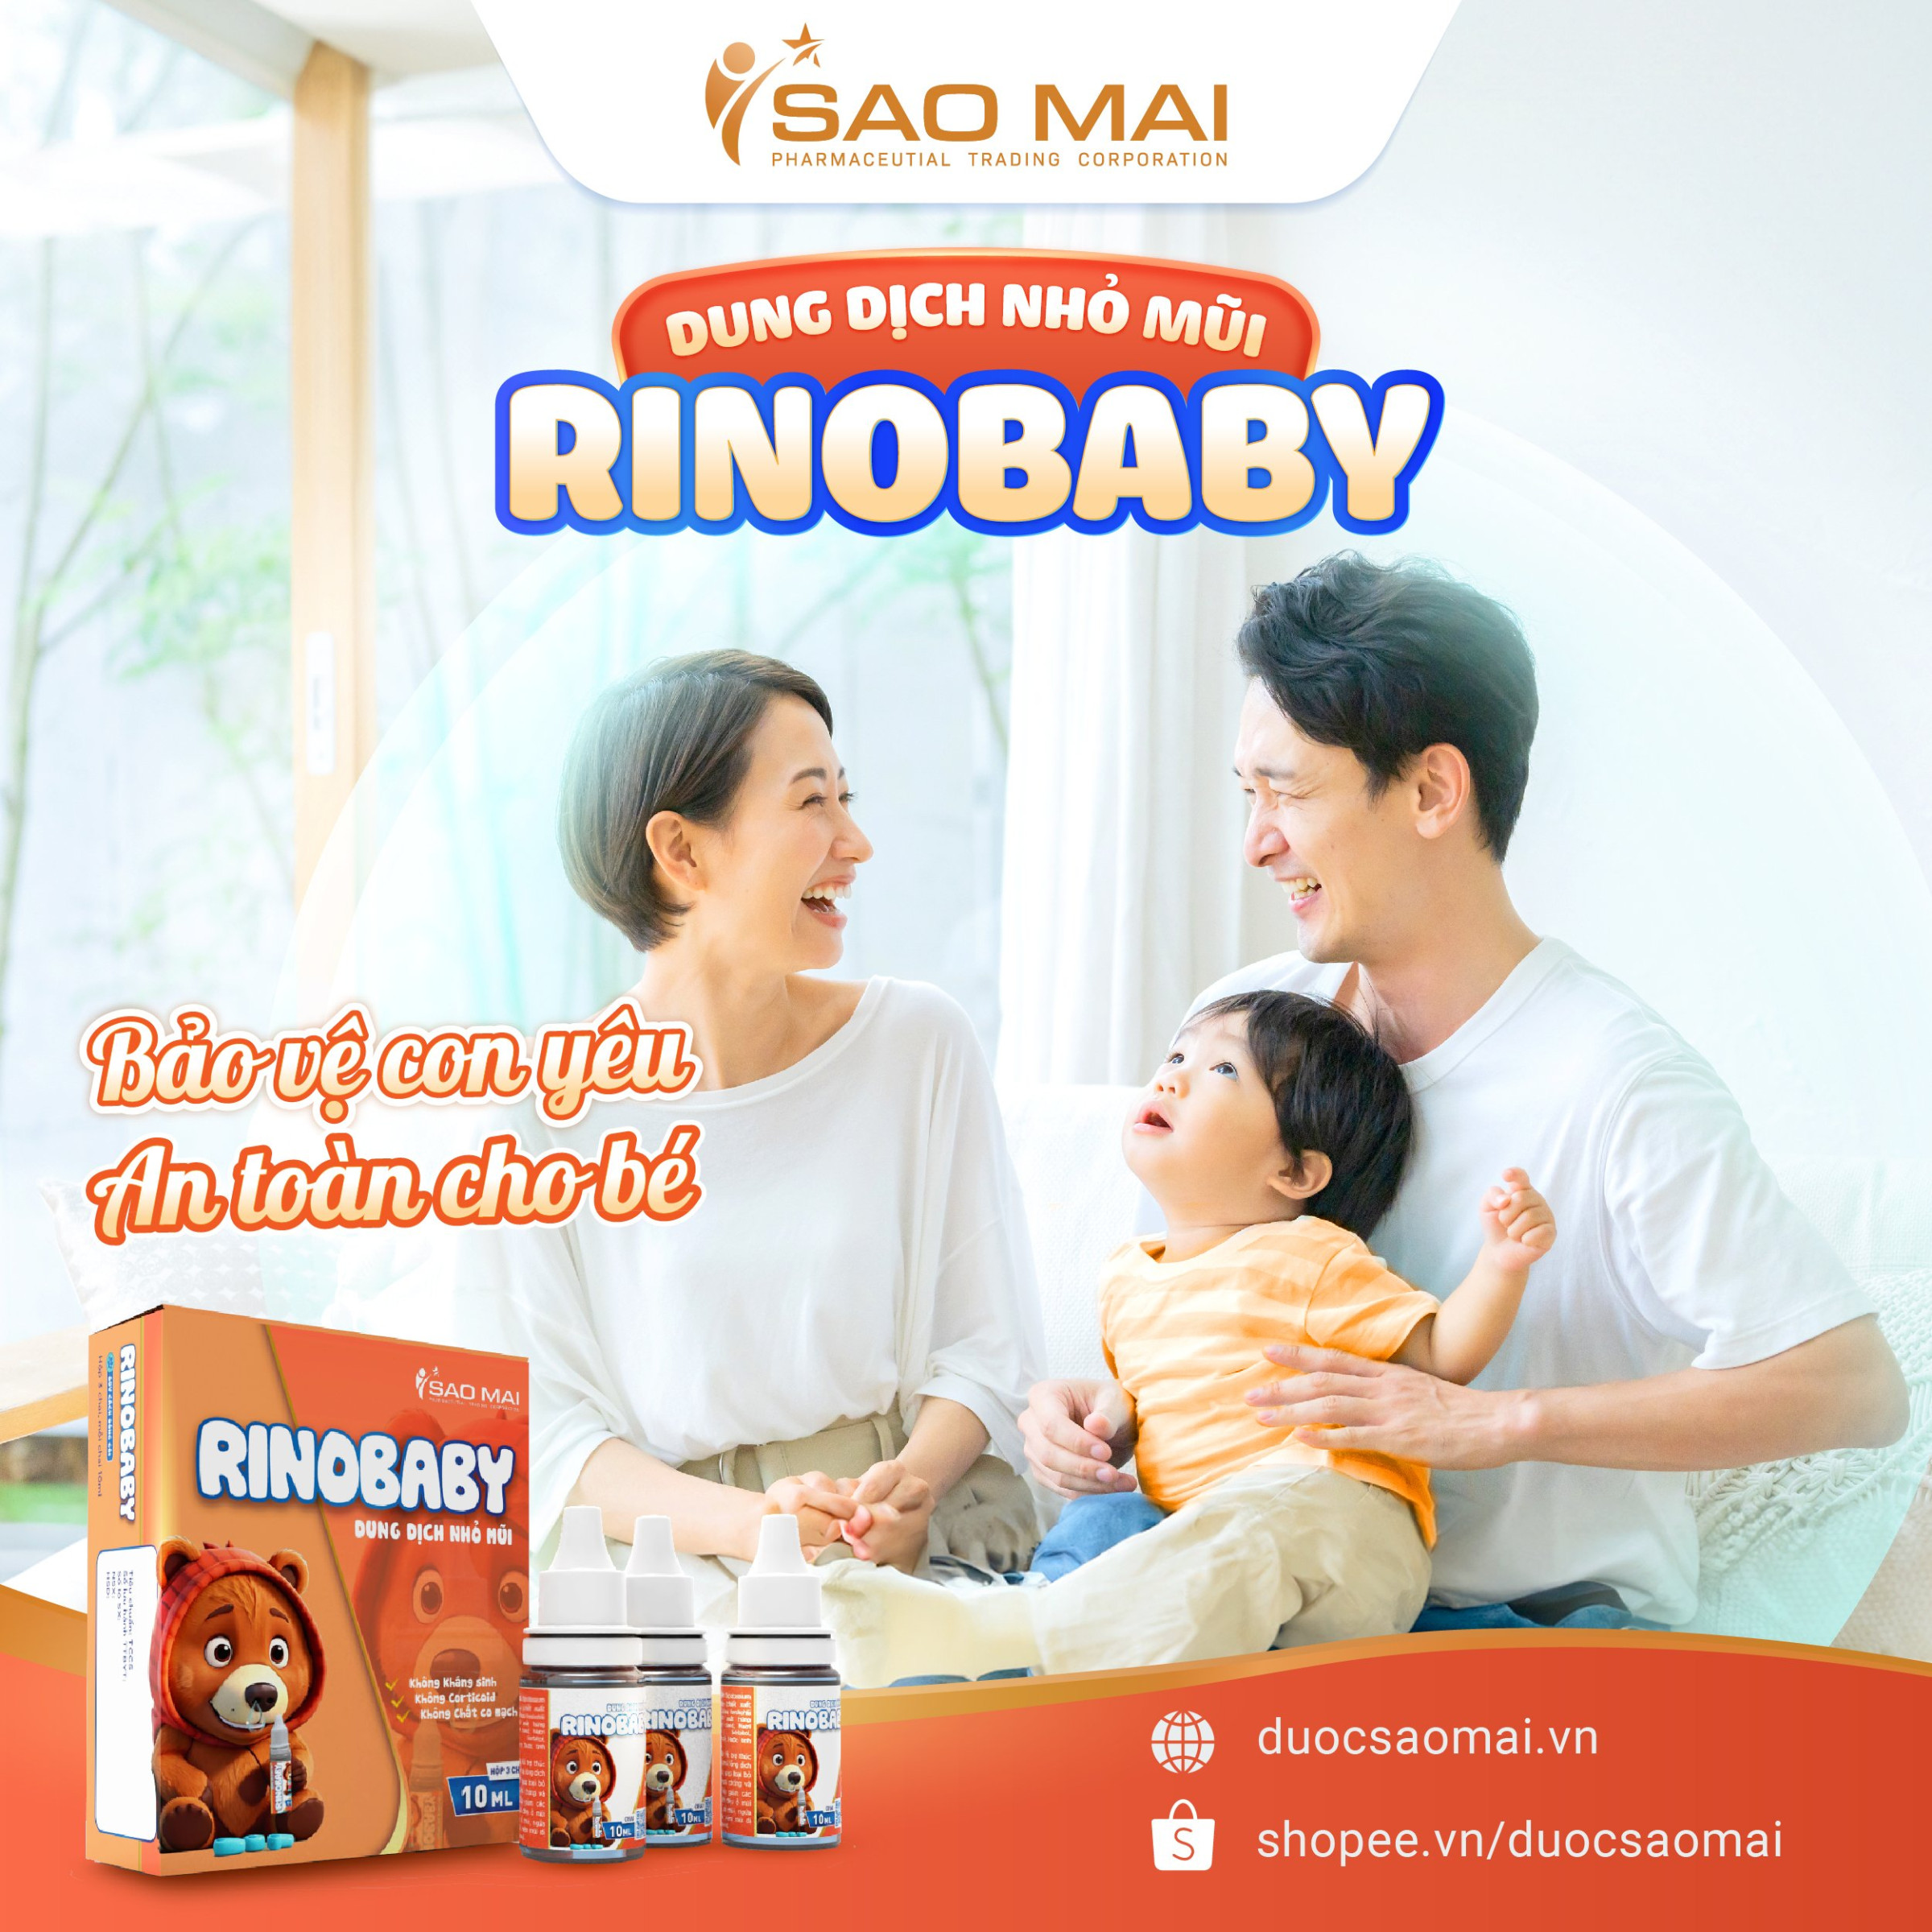 Rinobaby là sự lựa chọn hoàn hảo cho trẻ